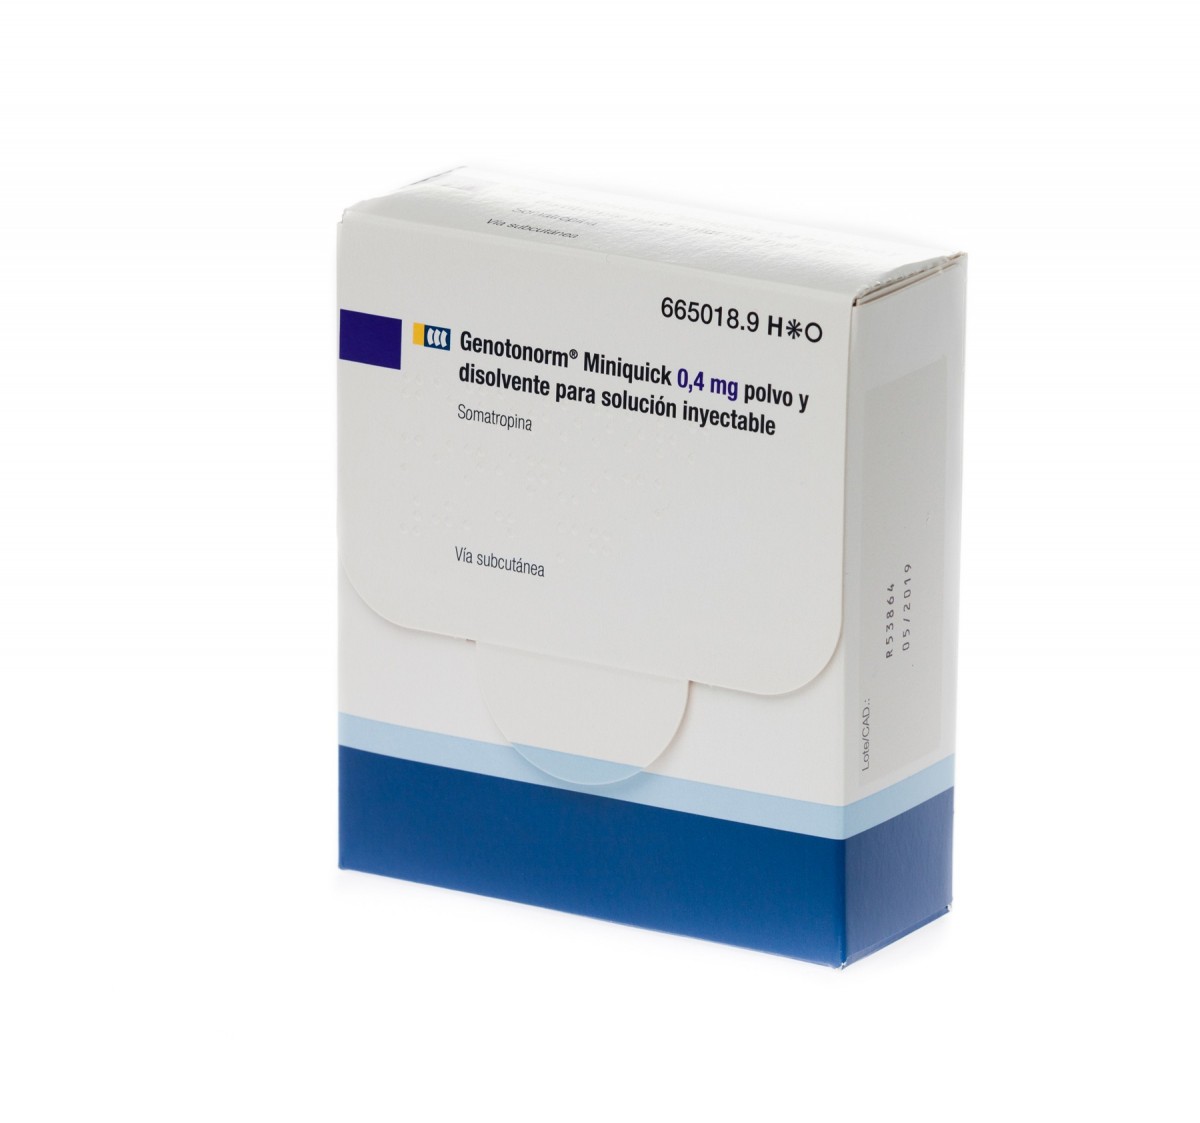 GENOTONORM MINIQUICK 0,4 mg POLVO Y DISOLVENTE PARA SOLUCION INYECTABLE 28 (4 x 7) viales de doble cámara fotografía del envase.